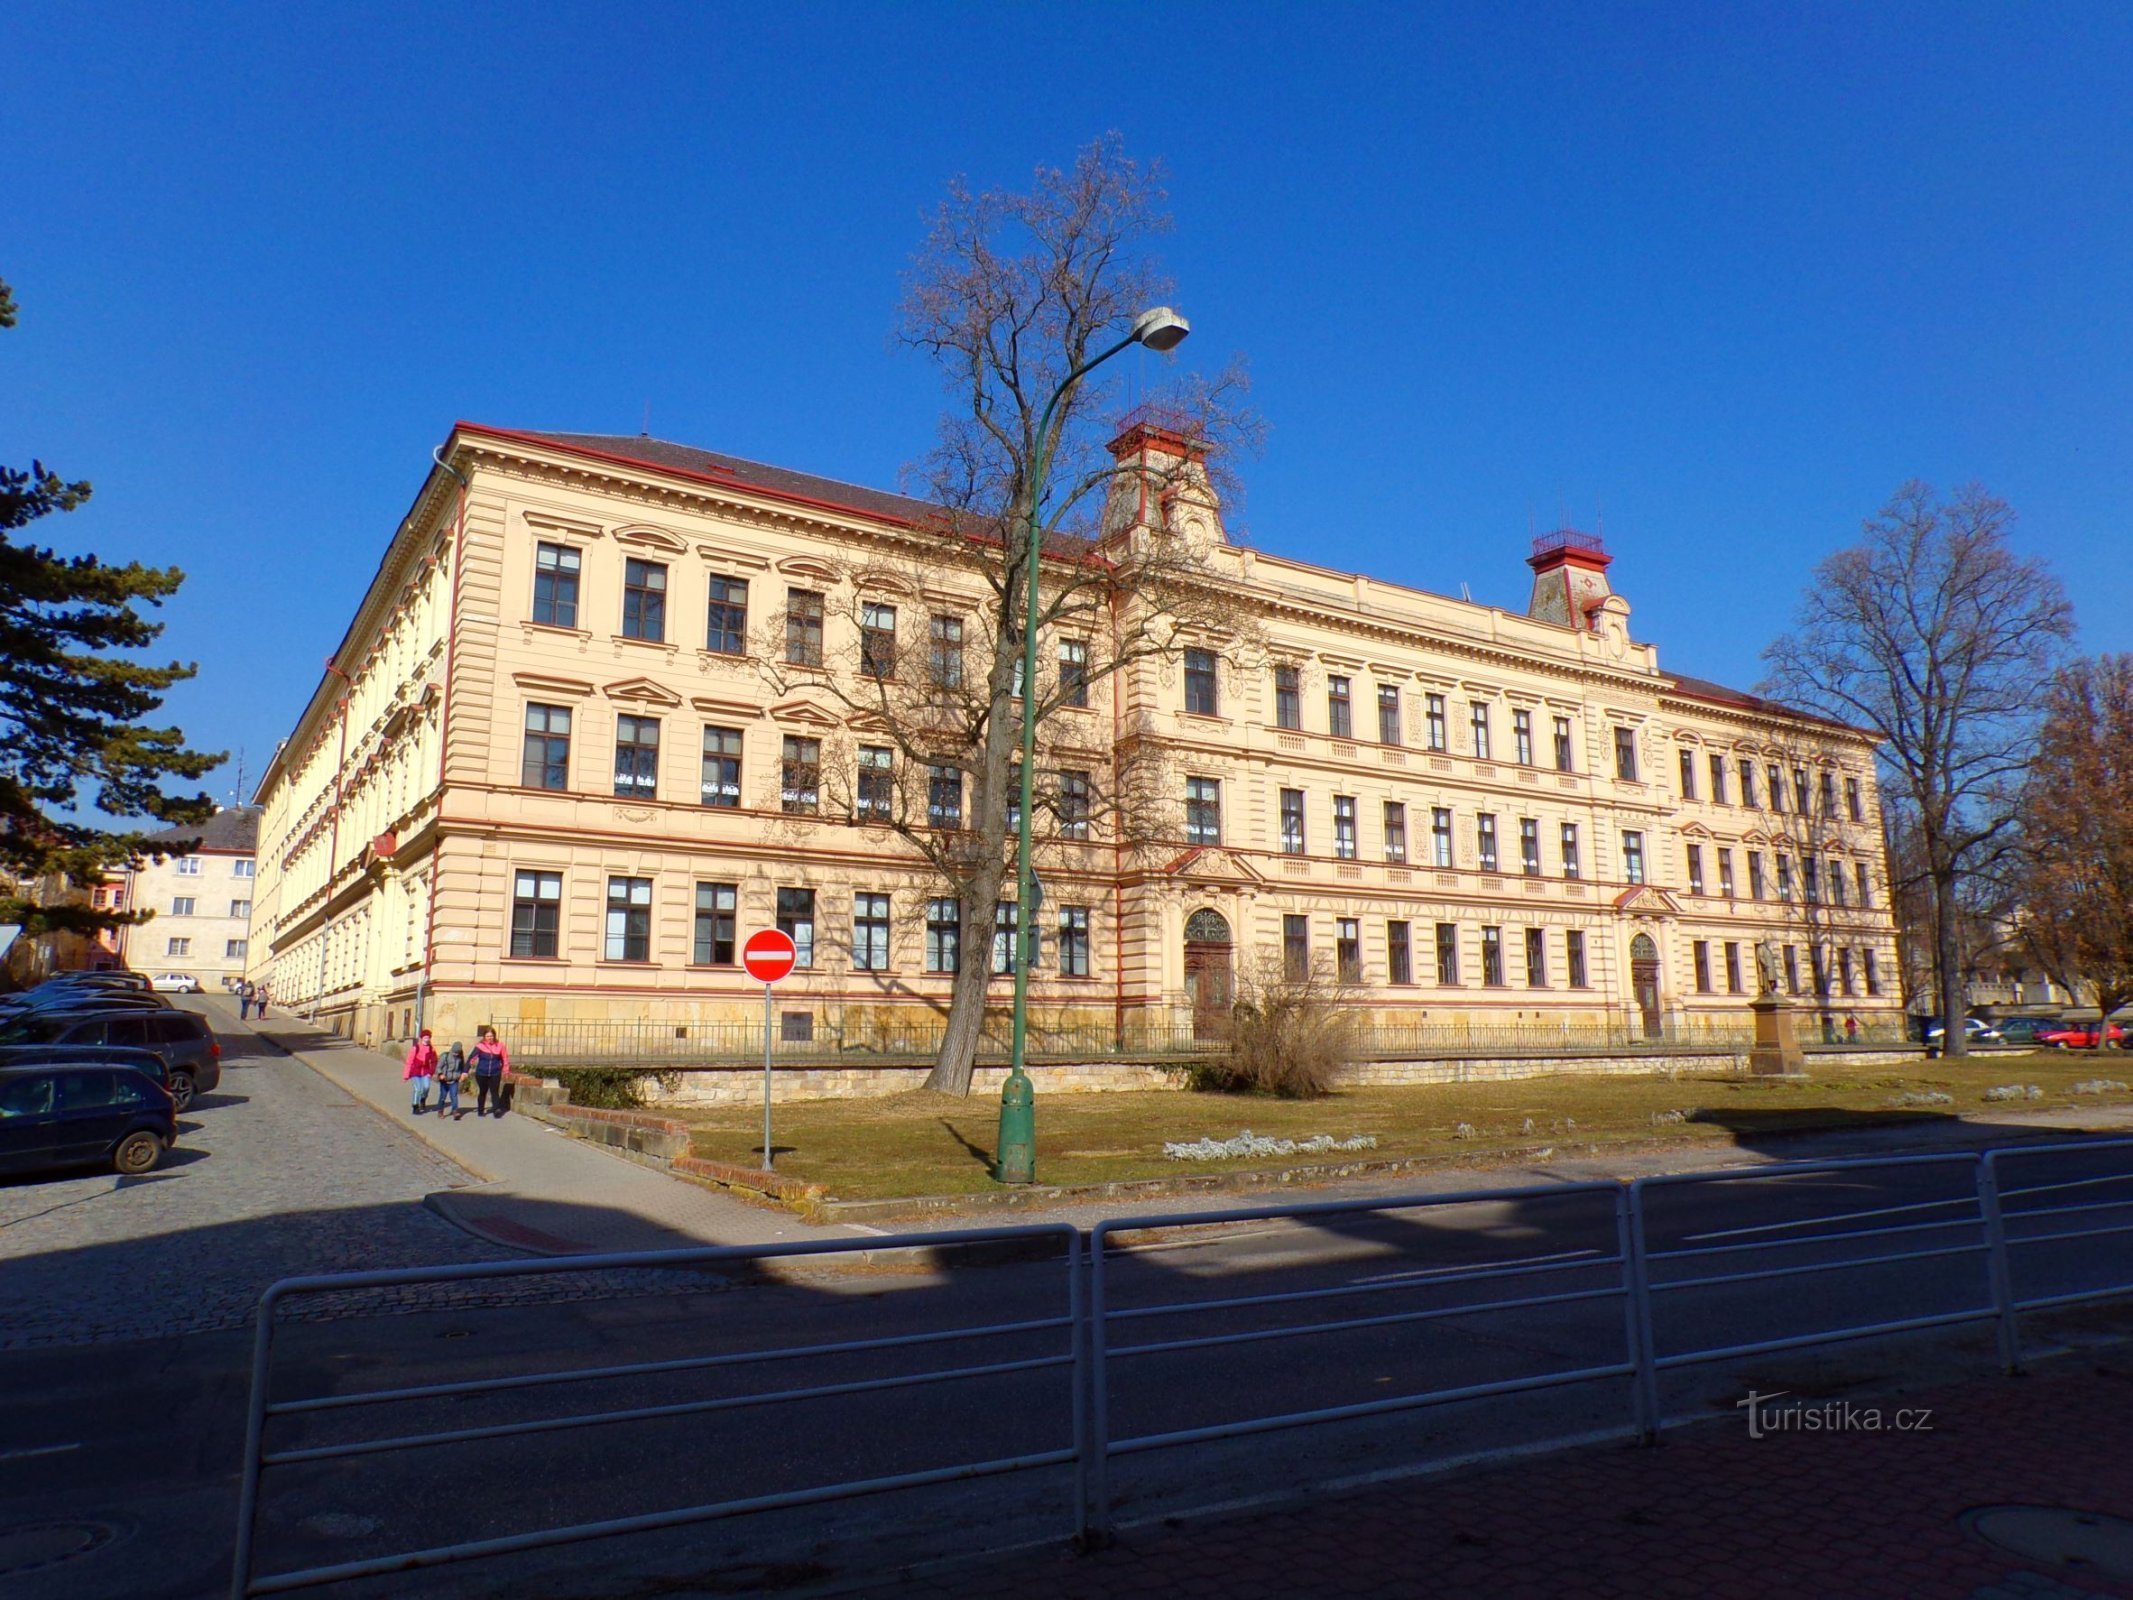 1-е здание начальной школы с памятником Яну Амосу Коменскому на переднем плане (Йичин, 3.3.2022)